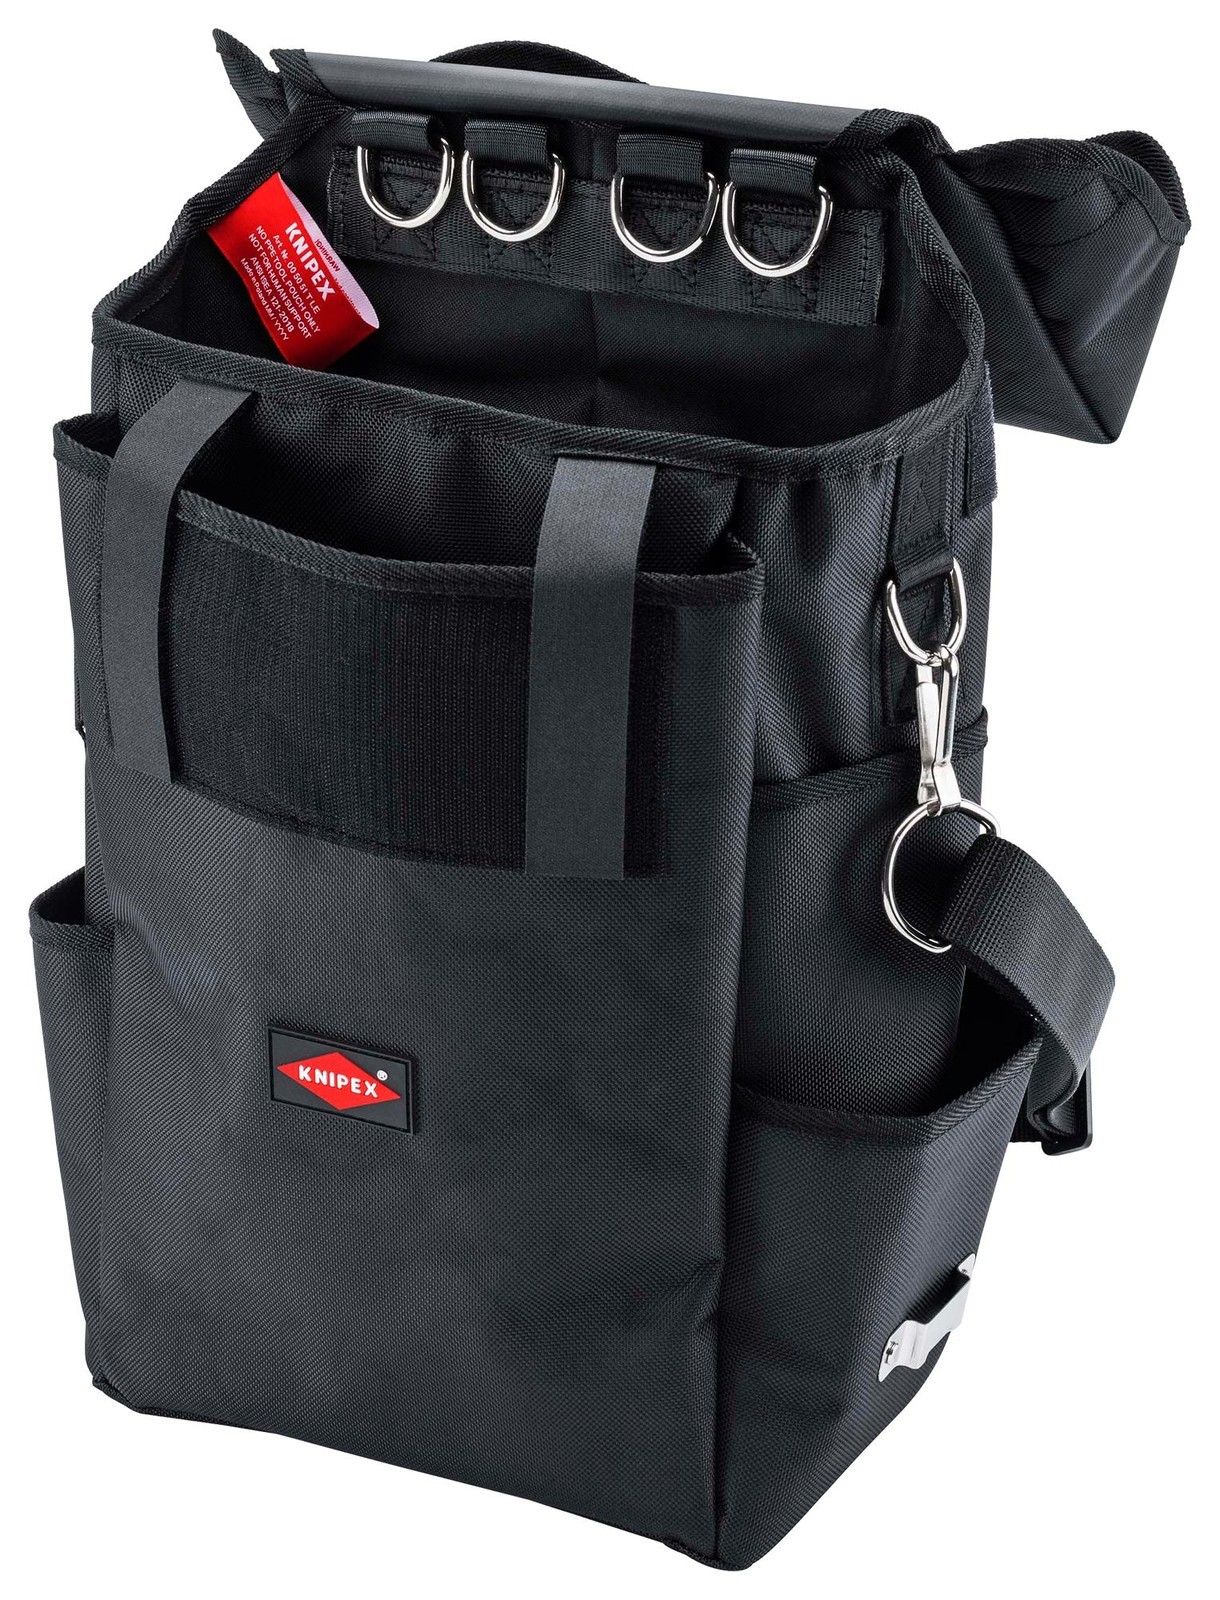 Knipex 00 50 51 T Le Tool Bag, 150 X 250 X 470mm, Fiber